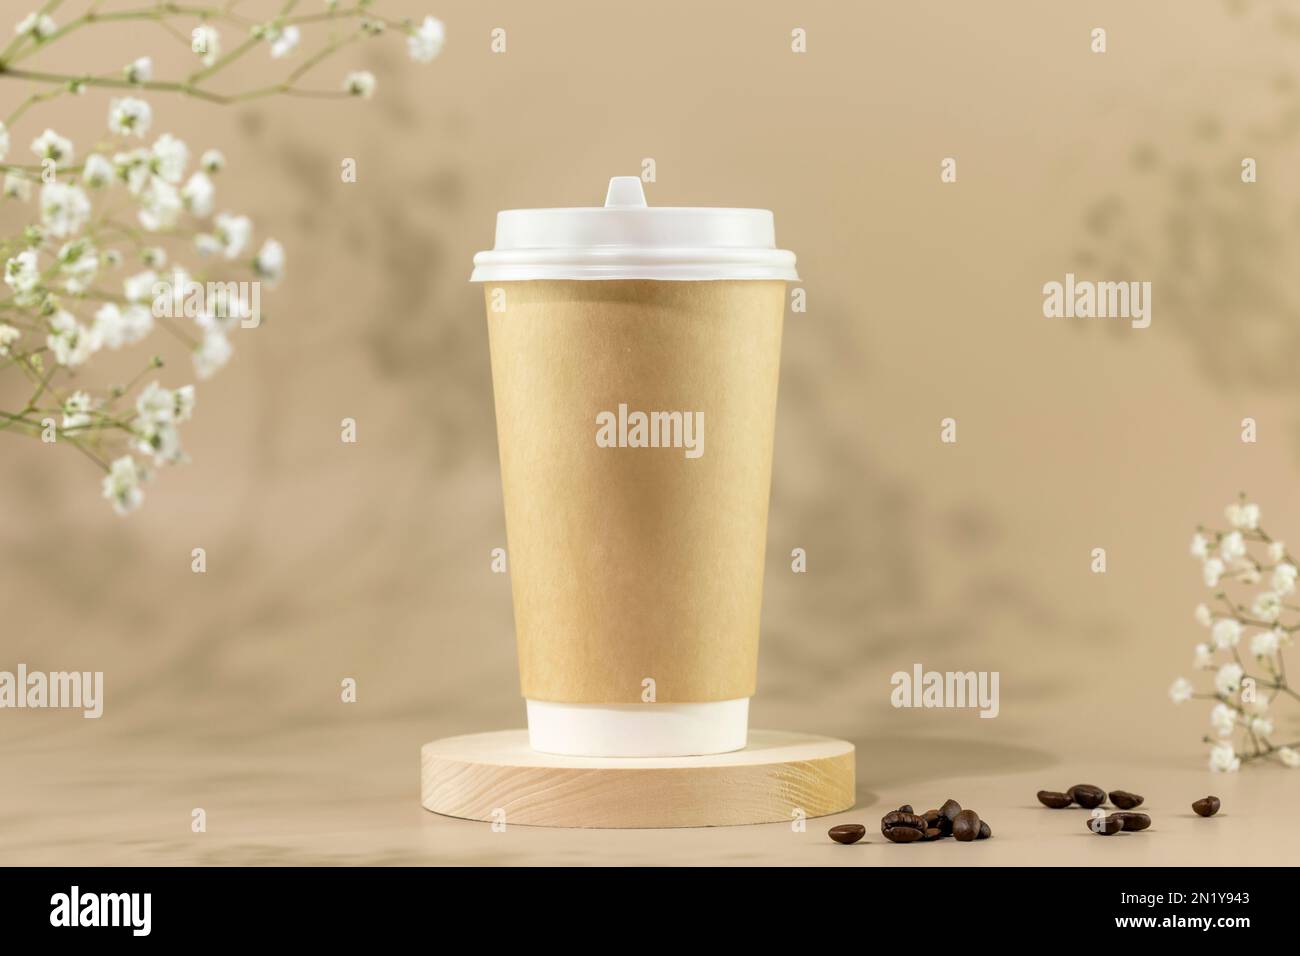 Kaffee zum Mitnehmen. Frühlingszusammensetzung mit umweltfreundlichem  Einweg-Pappbecher mit Kaffeebohnen auf beigefarbenem Hintergrund mit weißen  Blumen. Kaffee zum Mitnehmen Stockfotografie - Alamy